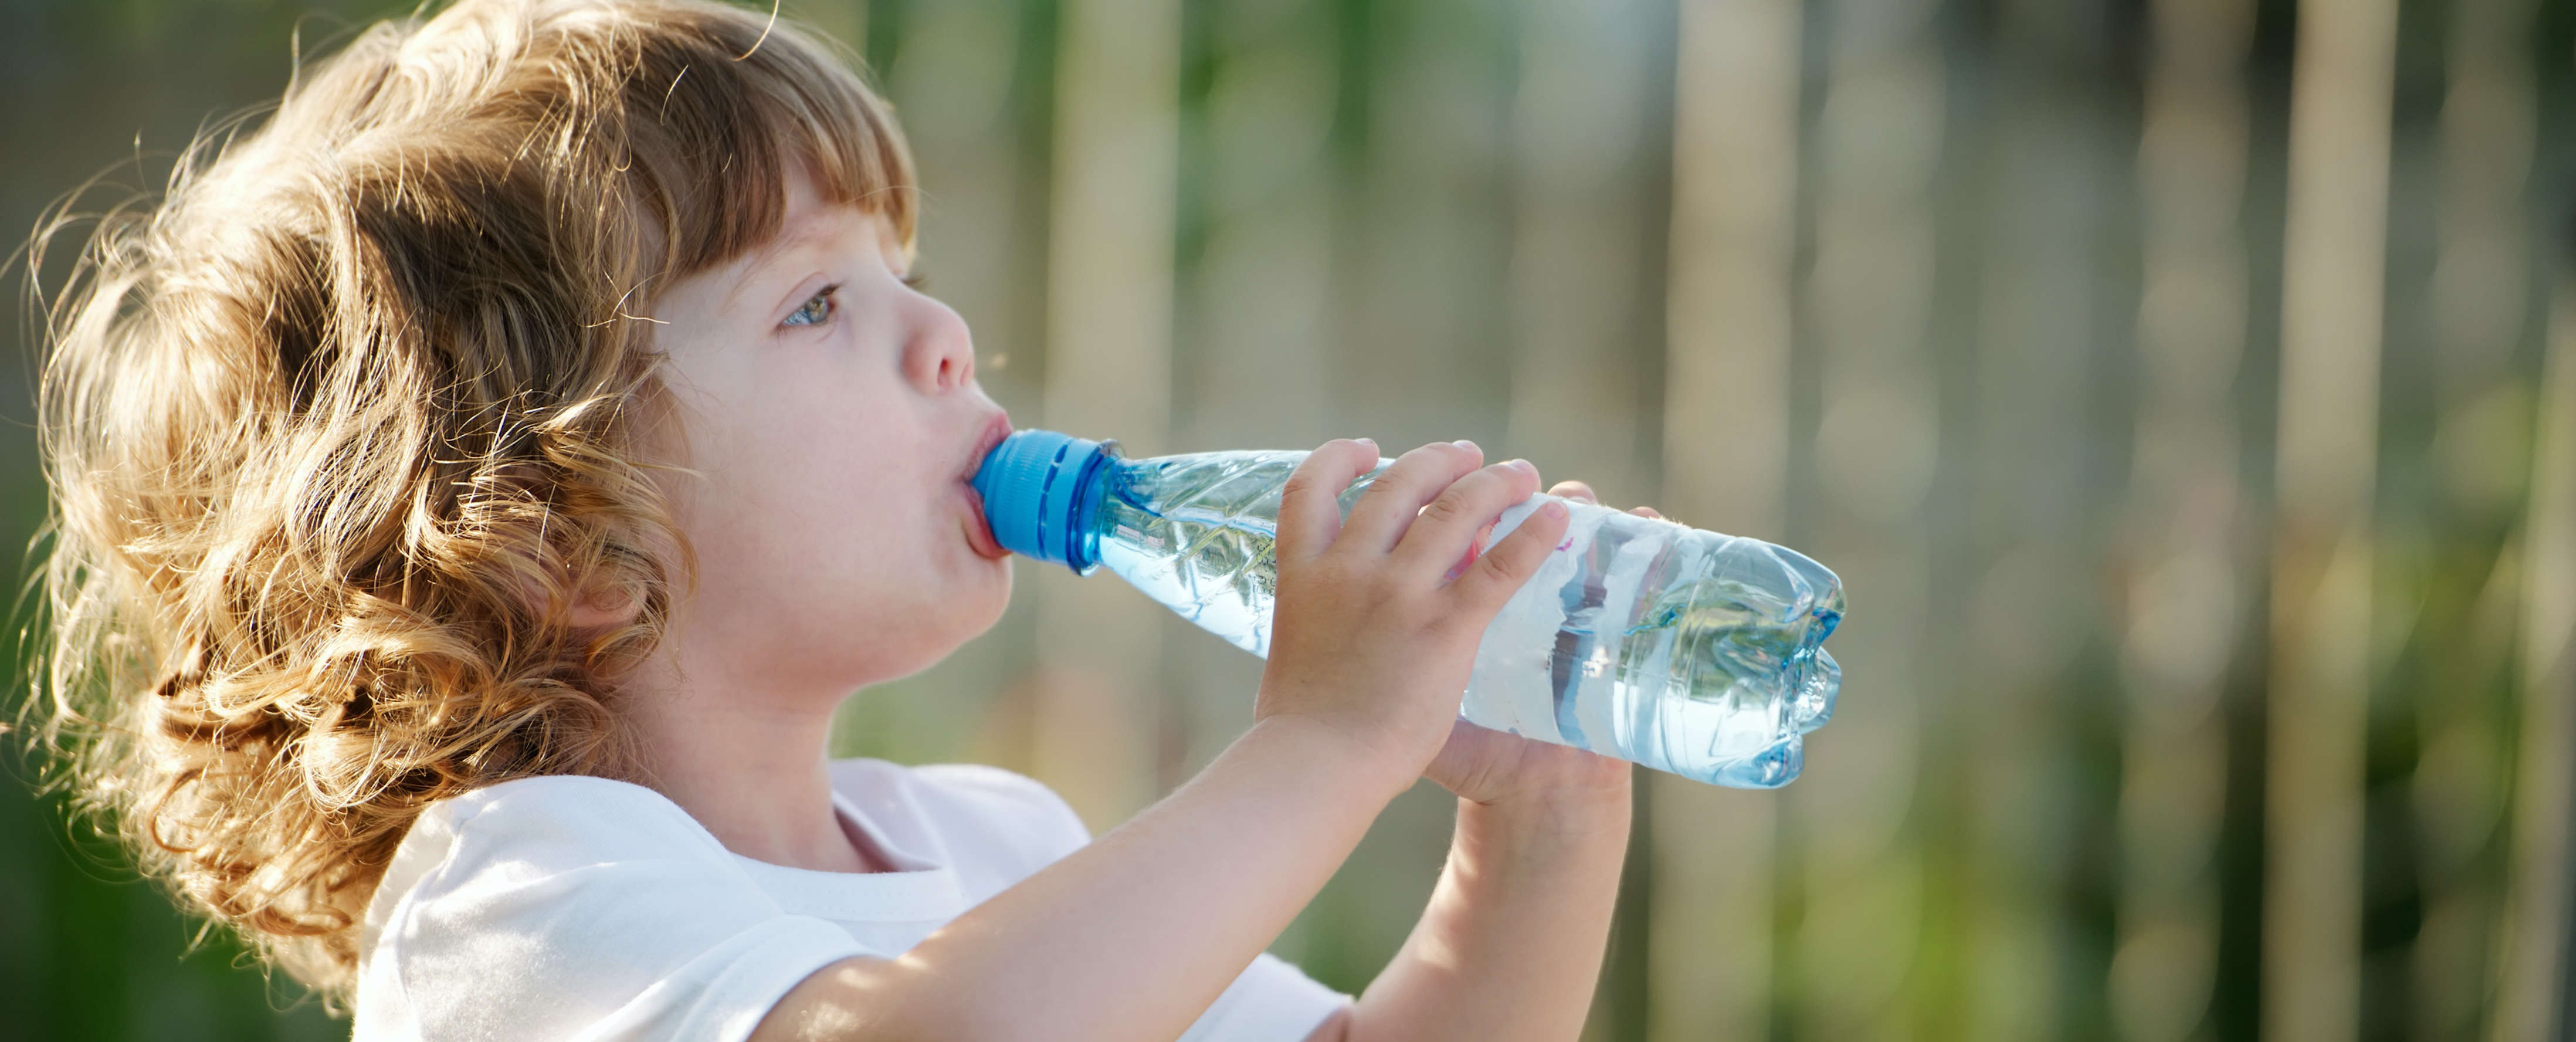 Вода младенцу пить. Дети воды. Ребенок пьет. Человек пьет воду. Ребенок с бутылкой воды.